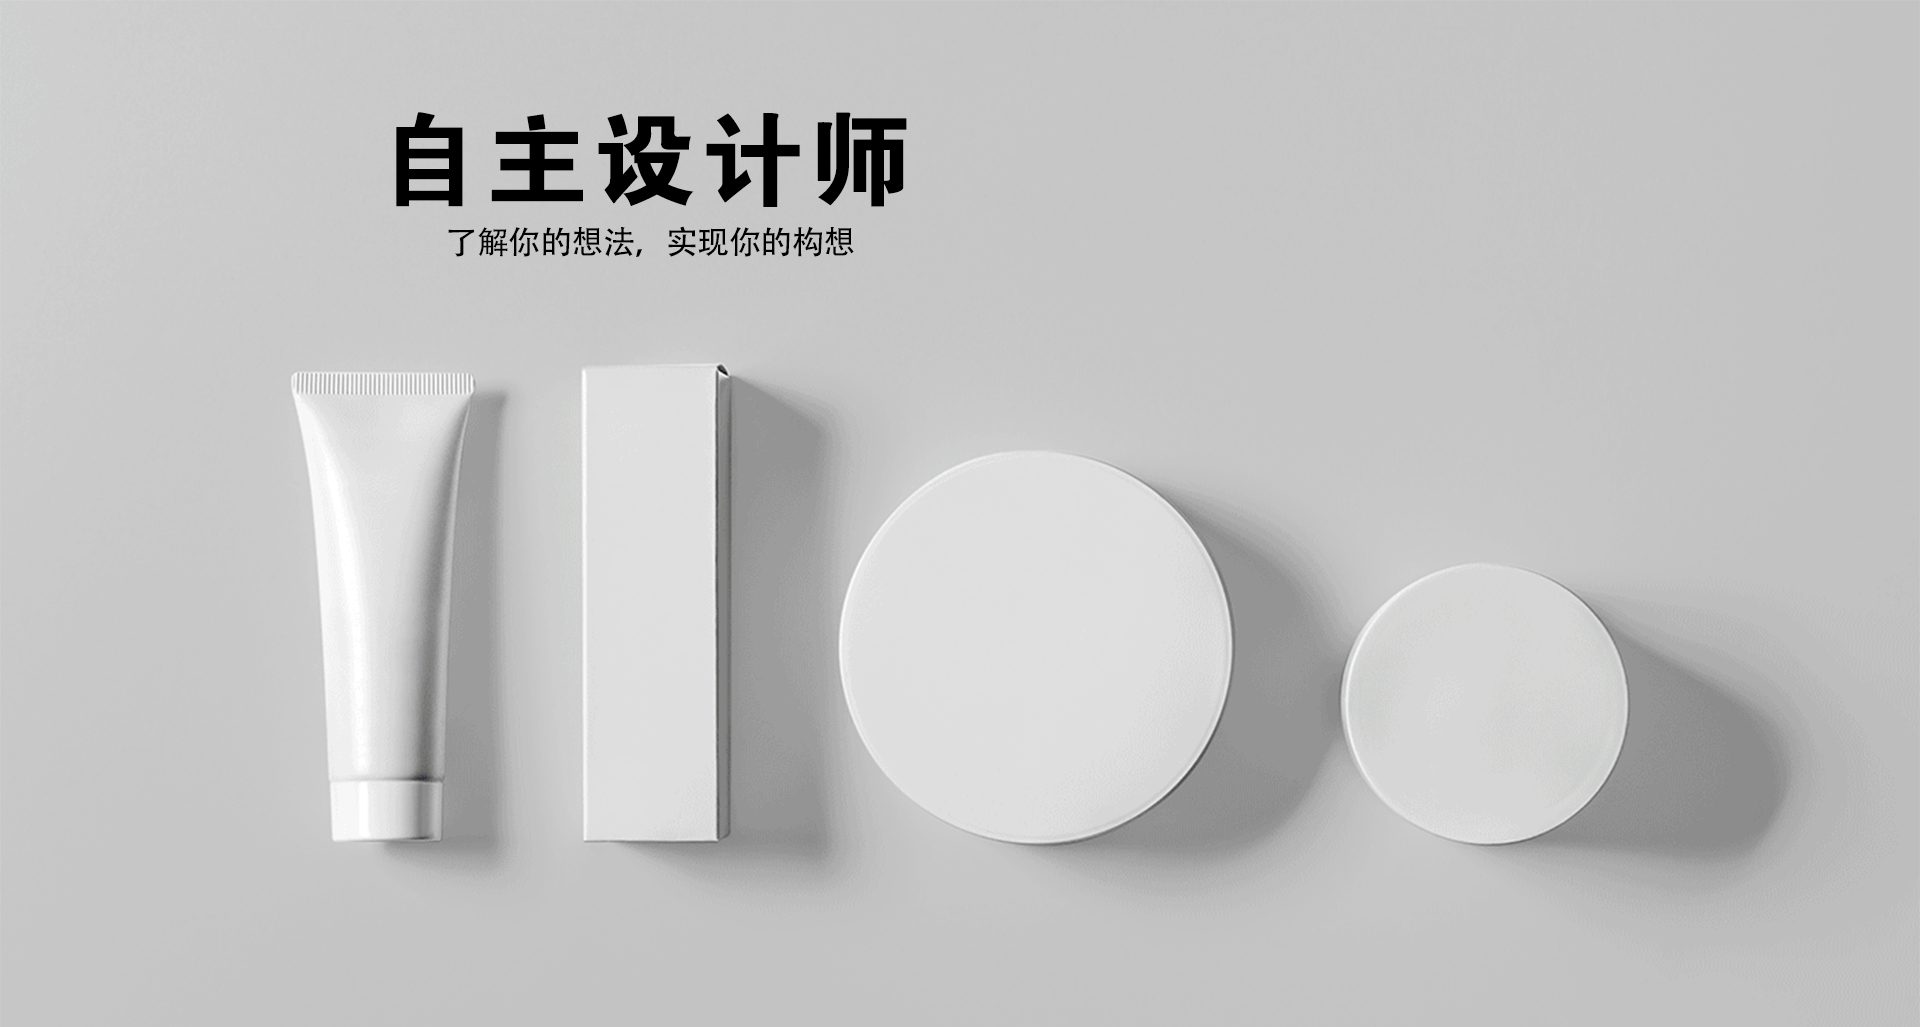 设计定制模块-卓龙网站中文-1